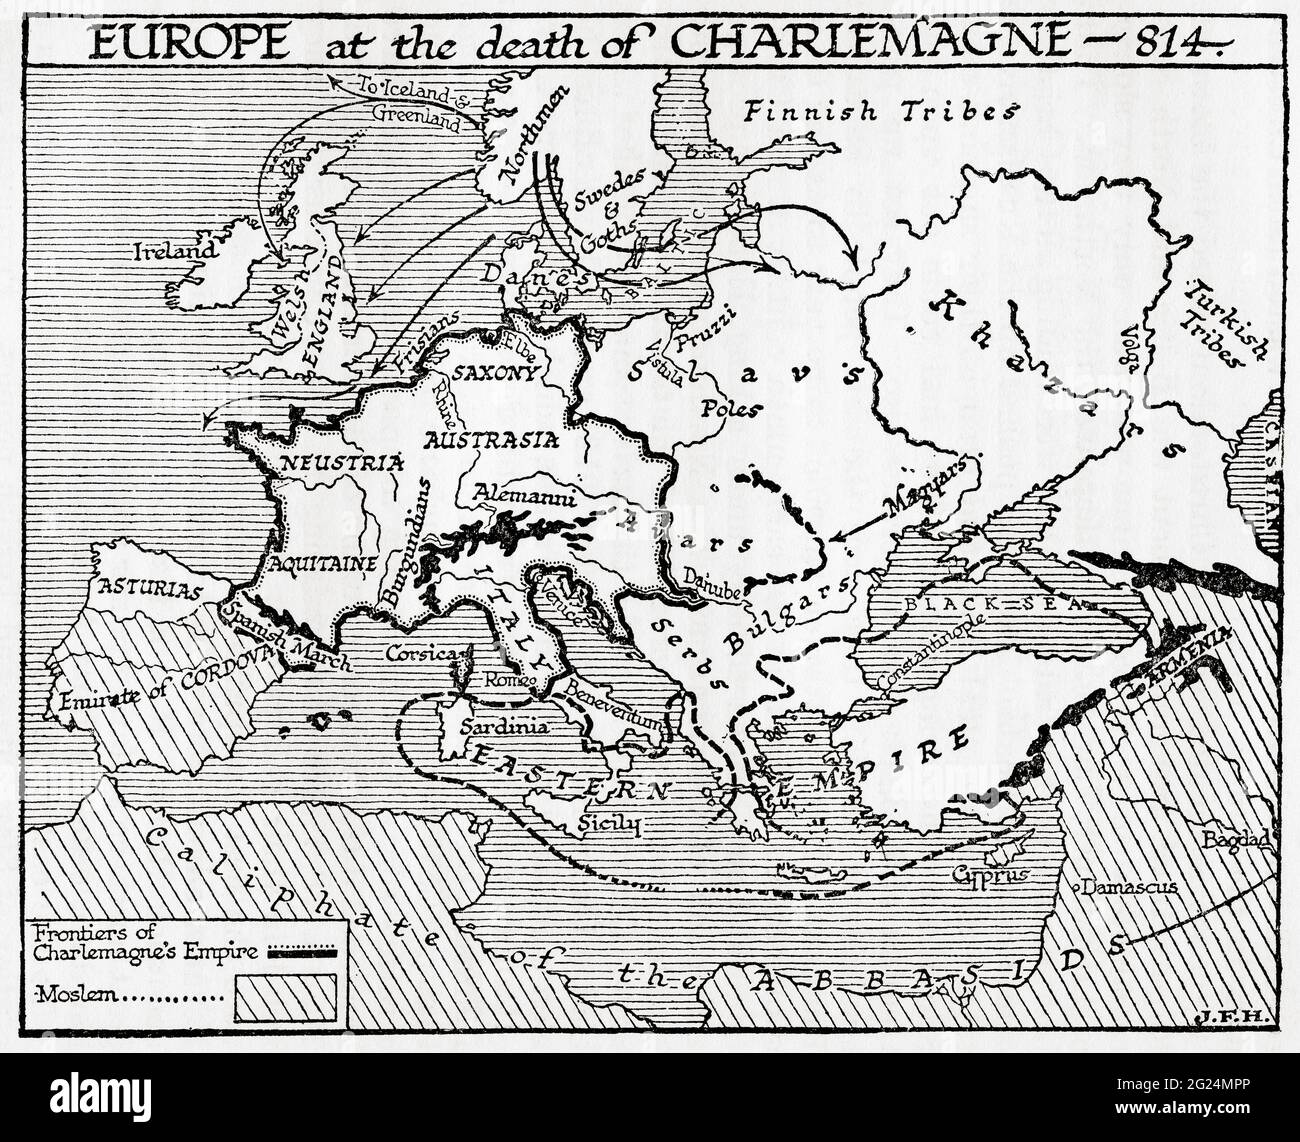 Karte von Europa beim Tod Karls des Großen, 814 n. Chr. Aus EINER kurzen Geschichte der Welt, veröffentlicht um 1936 Stockfoto